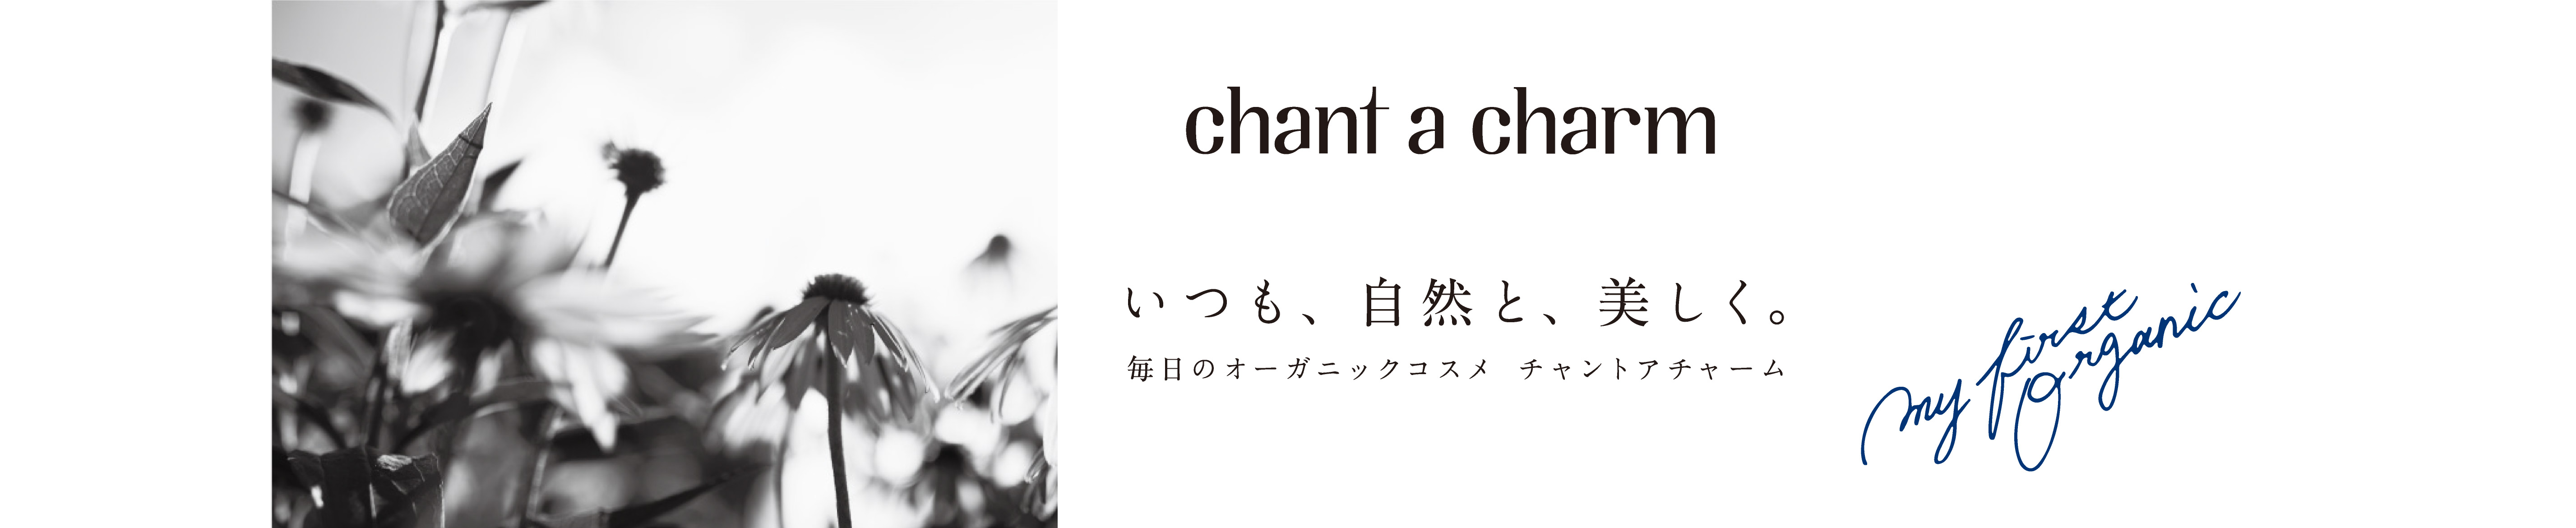 チャントアチャーム / chant a charm